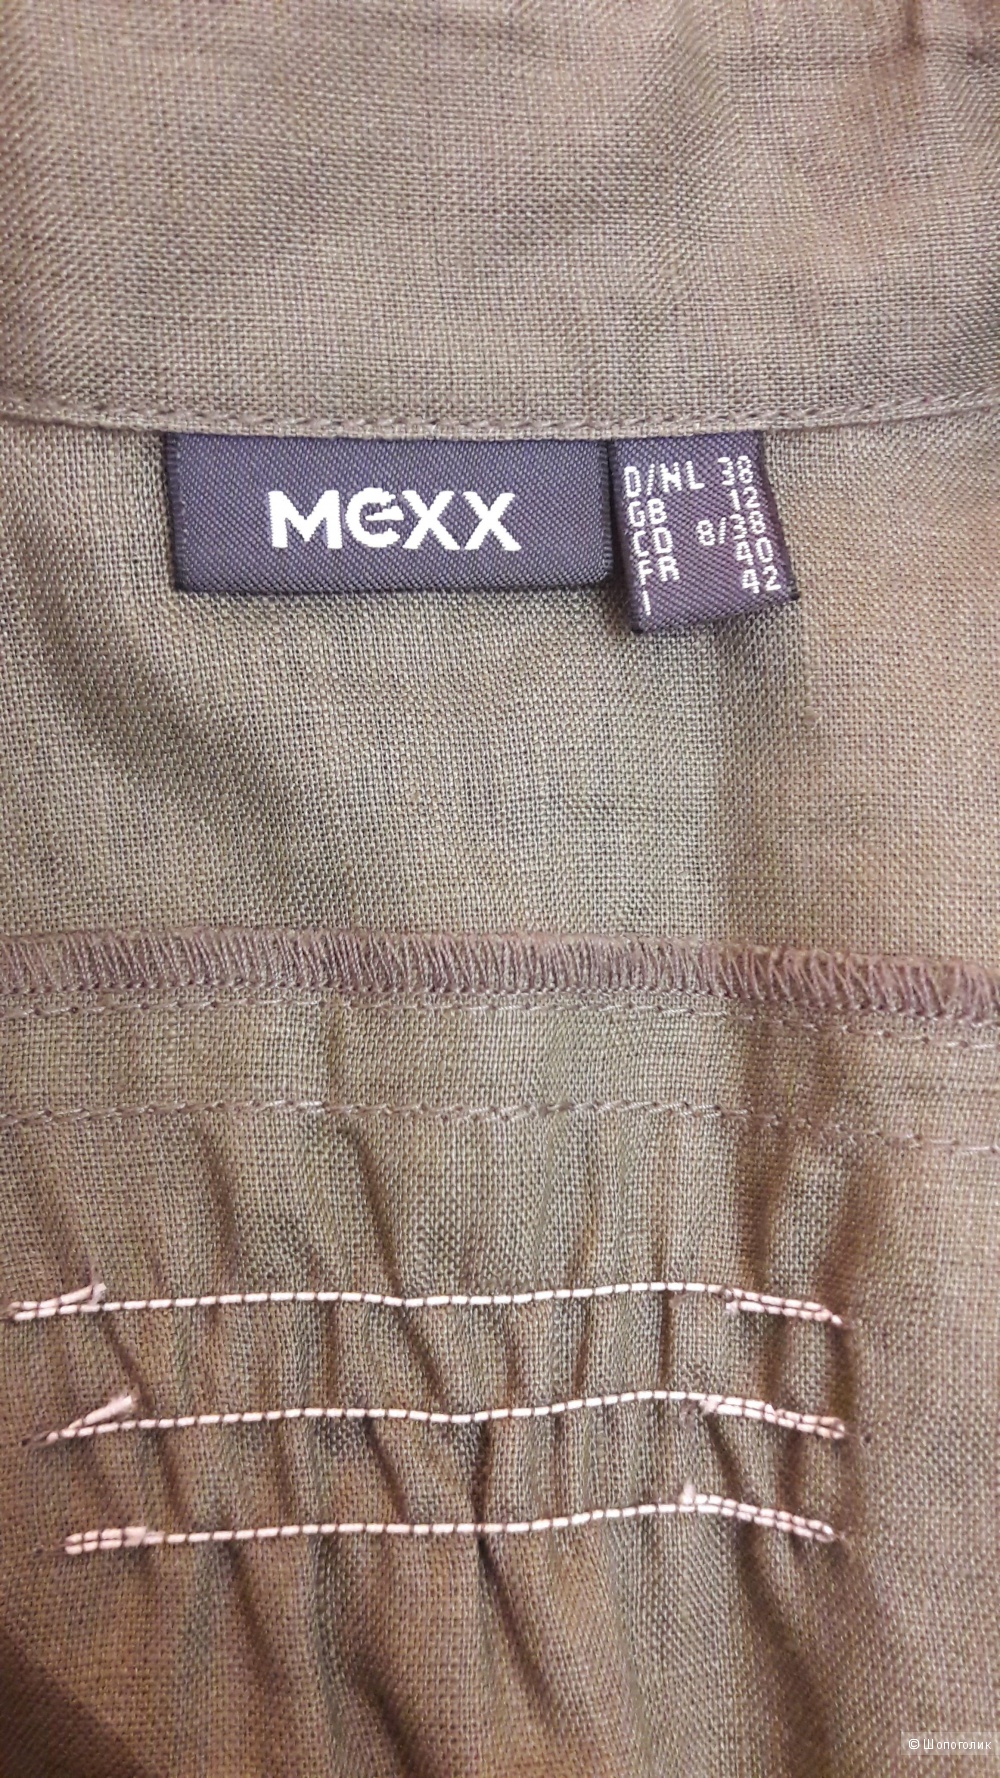 Mexx: льняной пиджак-туника с запахом, 38